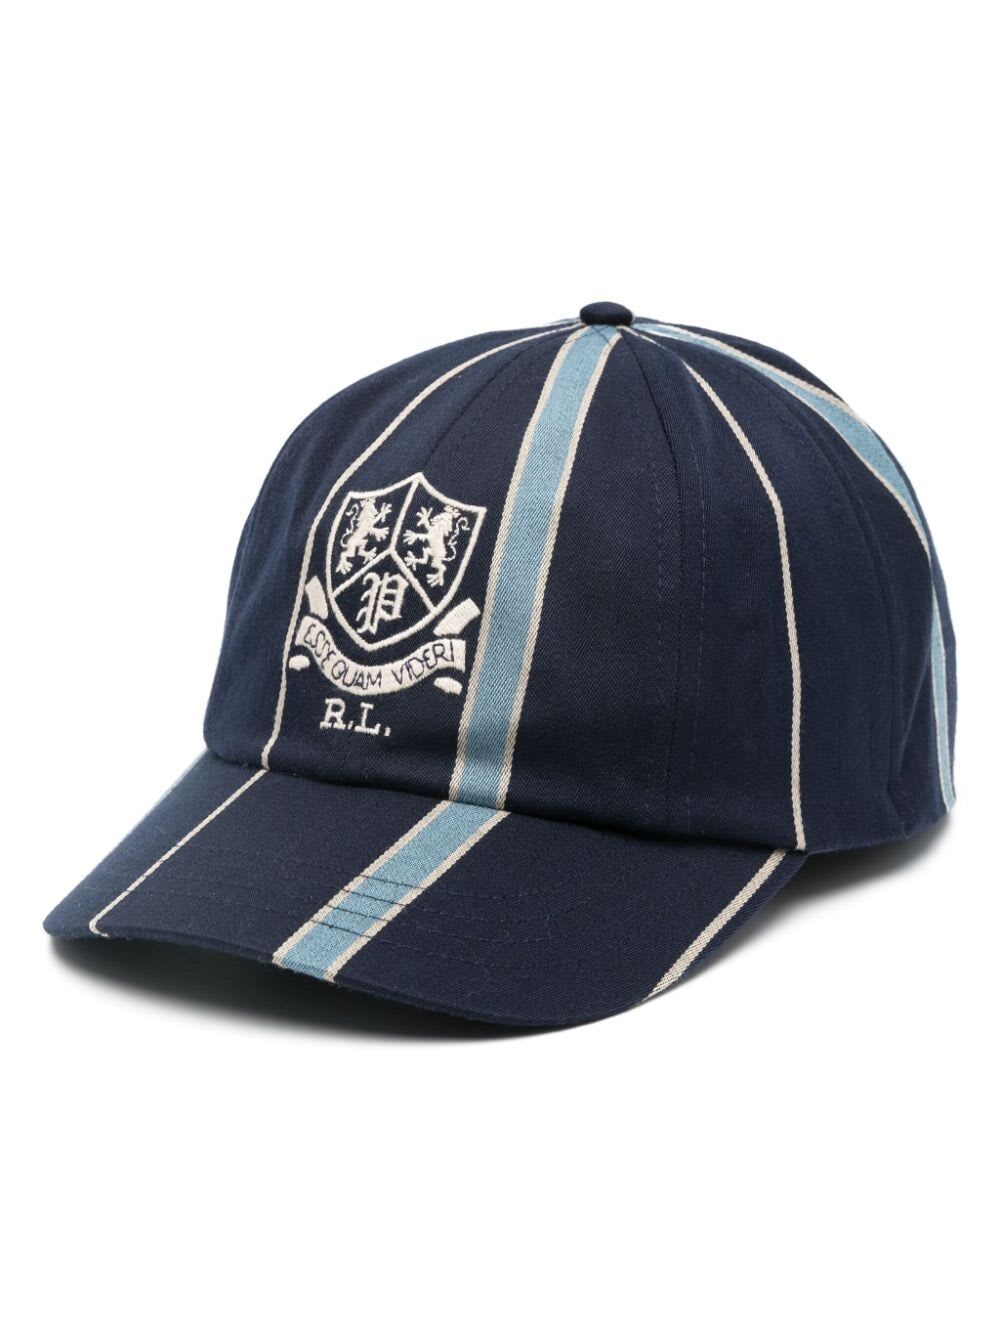 Cricket Cap